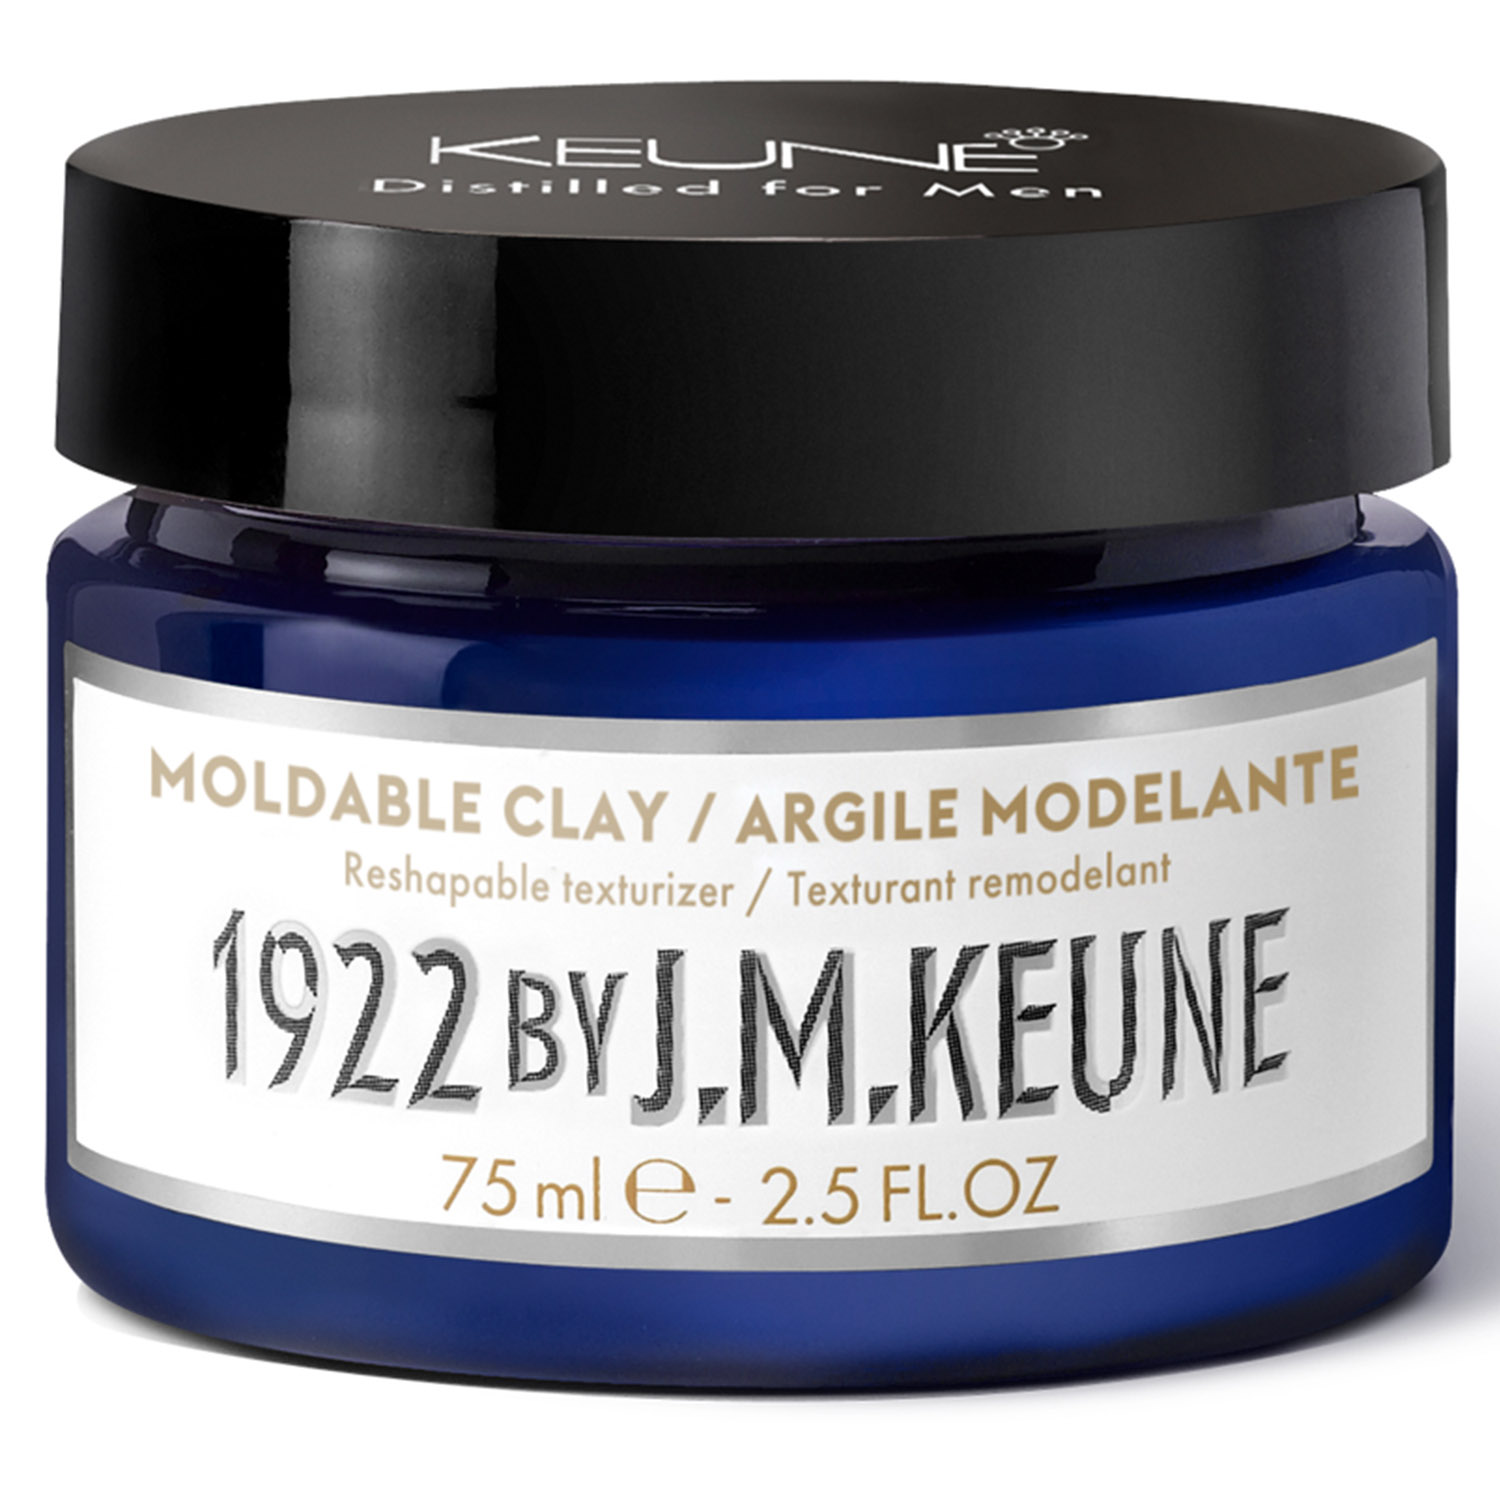 Keune Моделирующая глина для укладки волос Moldable Clay, 75 мл (Keune, 1922 by J.M. Keune) укладка и стайлинг protokeratin глина моделирующая матовая сильной фиксации